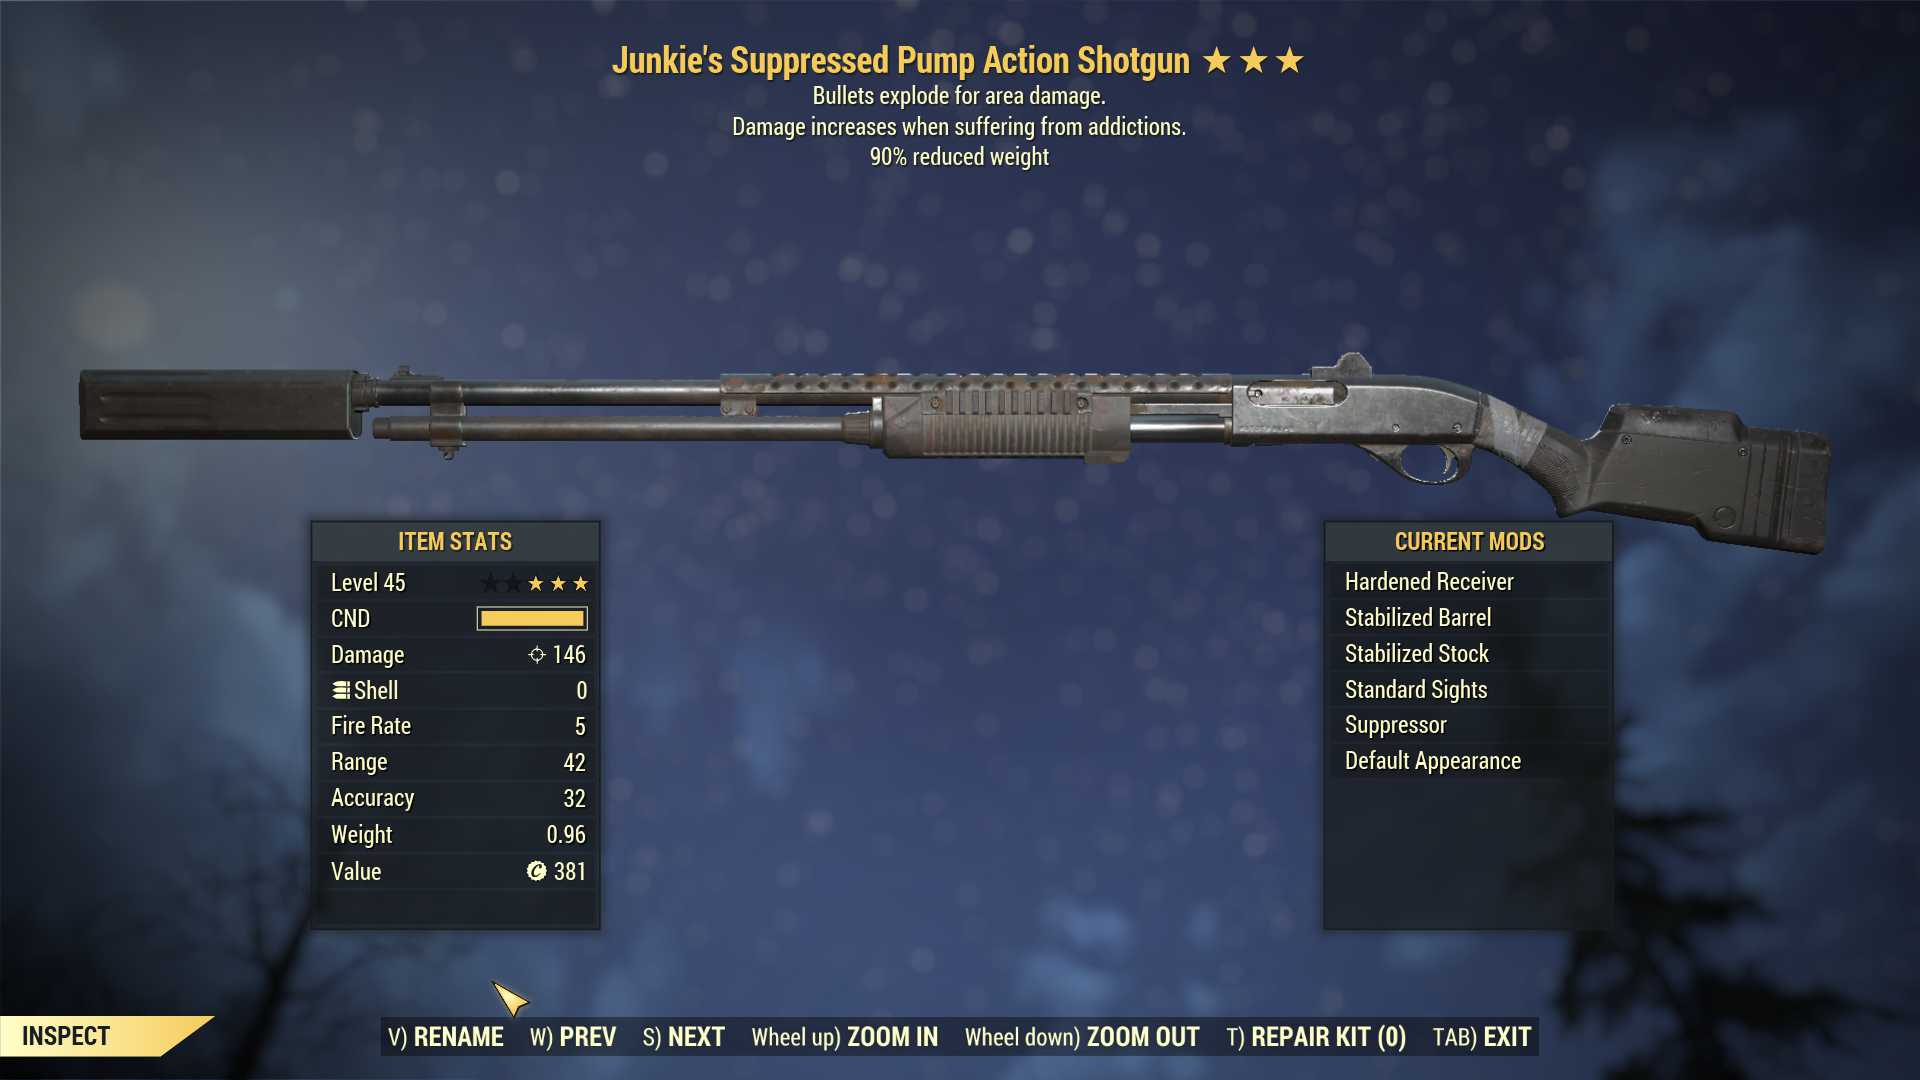 Junkie's Explosive Pump Action Shotgun (90% reduced weight)